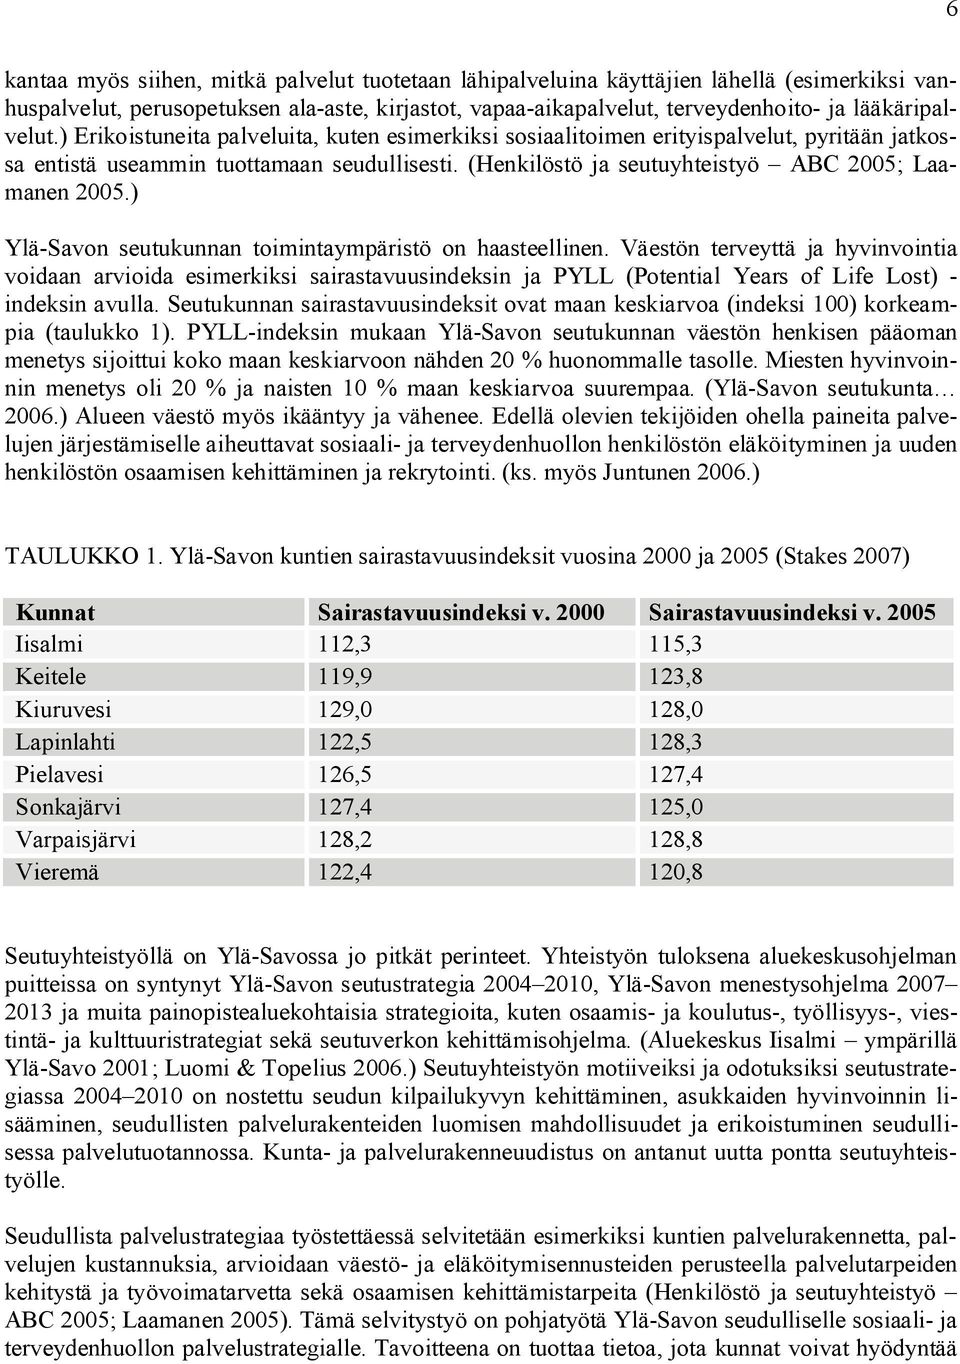 (Henkilöstö ja seutuyhteistyö ABC 2005; Laamanen 2005.) Ylä-Savon seutukunnan toimintaympäristö on haasteellinen.